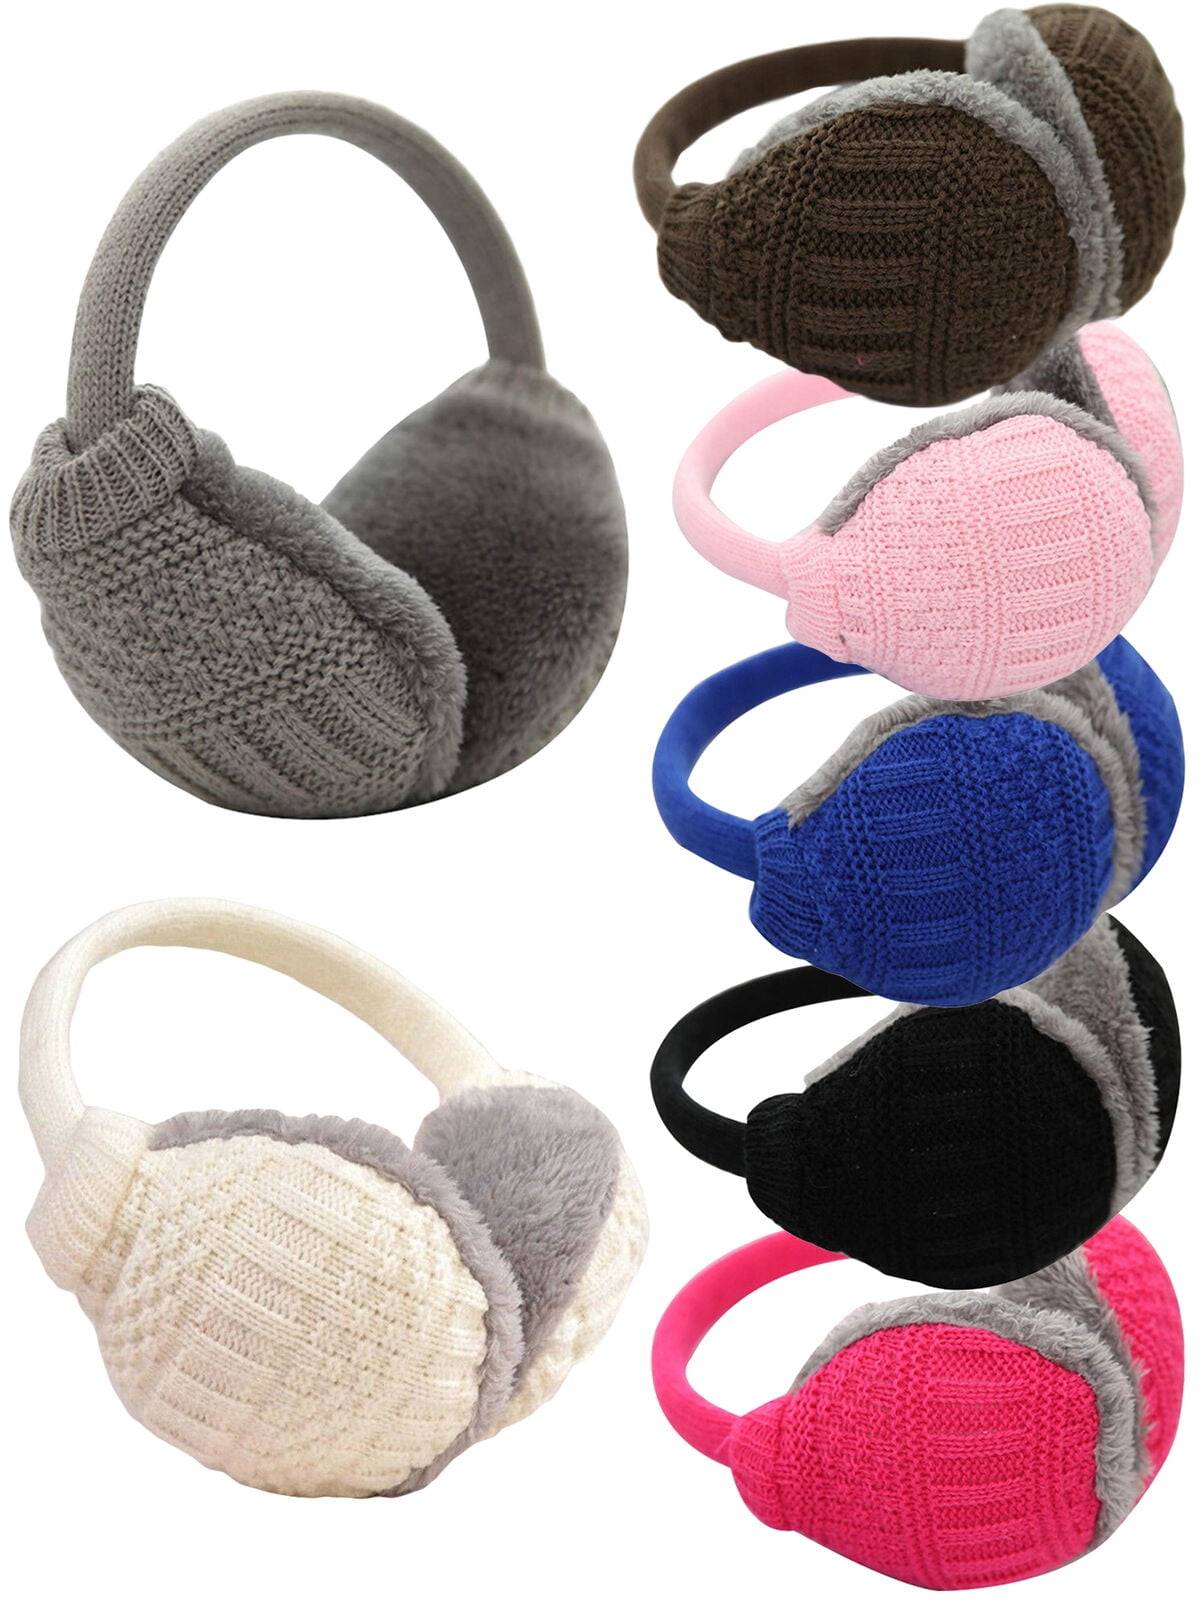 Simple Winter Warm Knitted Earmuffs Ear Warmers Women Girls Ear Muffs Earlap 